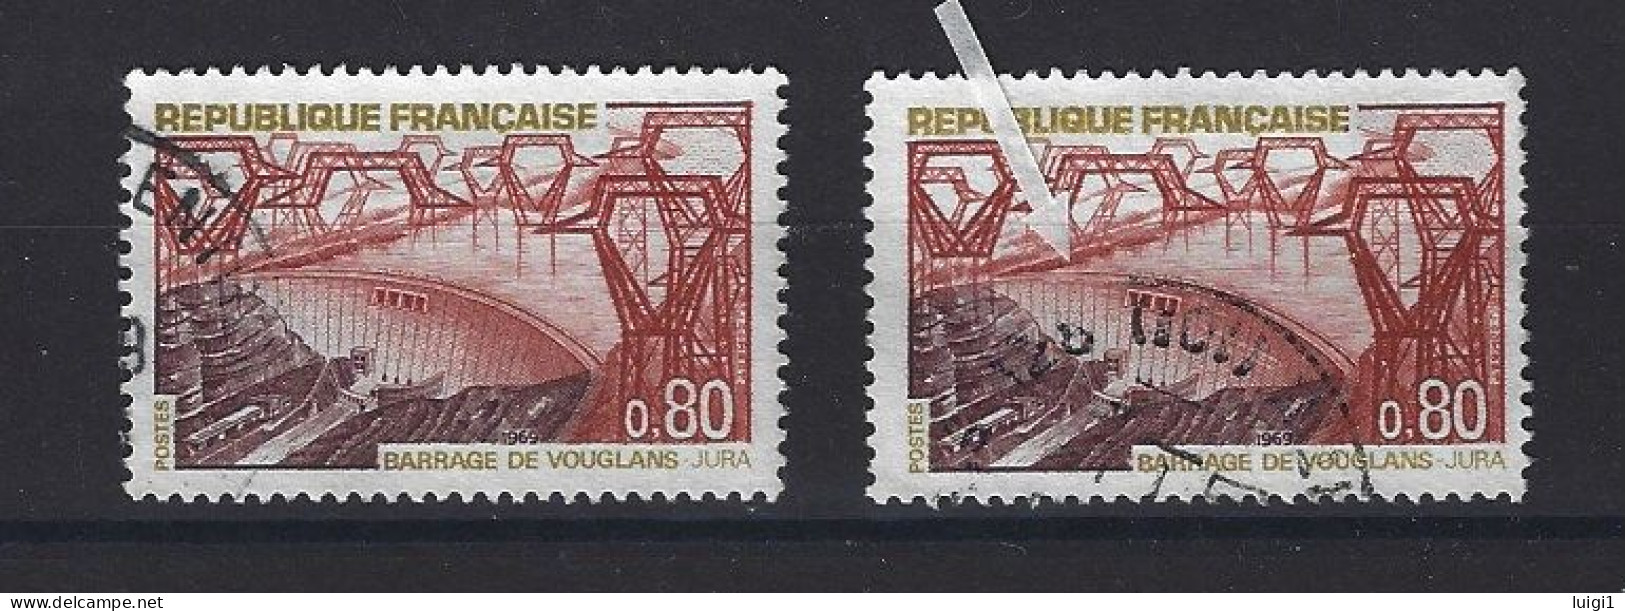 FRANCE 1969 - Y&T N°1583 + N°1583b . 80 C. Barrage De Vouglans. - Variété : Normal + Barrage Rompu. Oblitérés. TB - Gebraucht